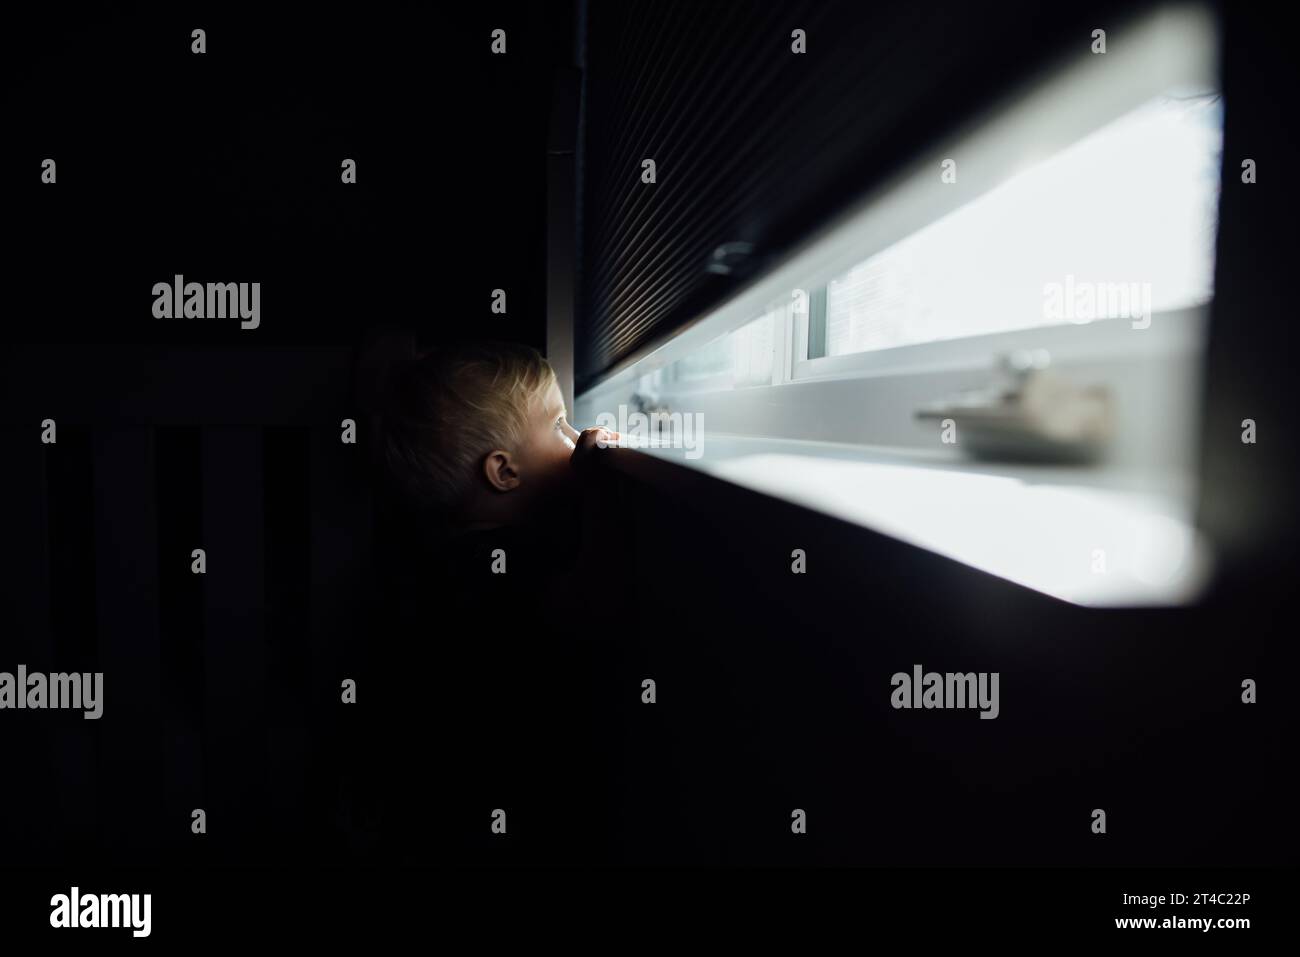 Der kleine blonde Junge ragt durch ein helles Fenster aus dem dunklen Raum Stockfoto